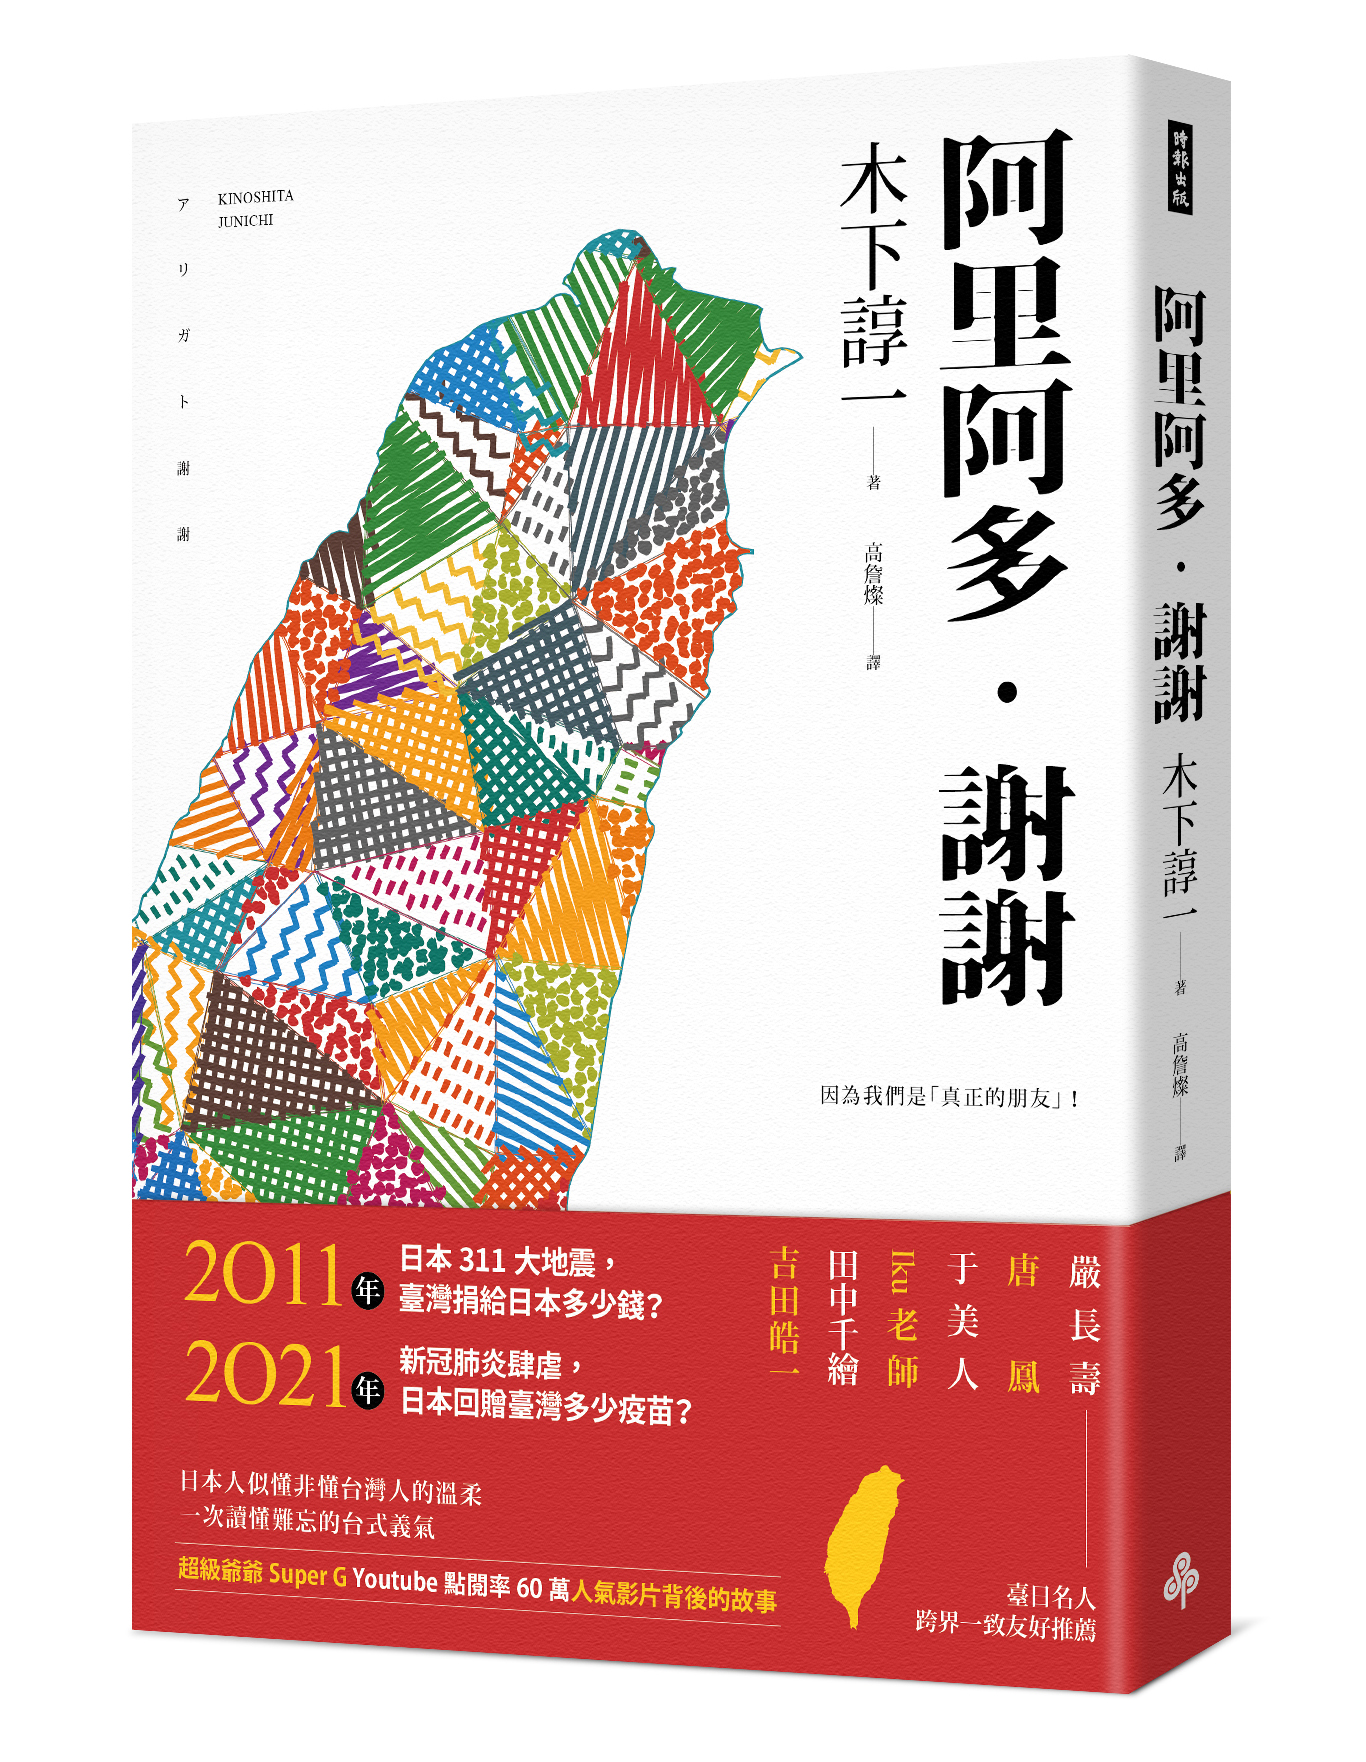 “Arigato, Terima Kasih”akan mulai dijual di toko buku dan situs pembelian buku online di Taiwan. Sumber: Junichi Kinoshita